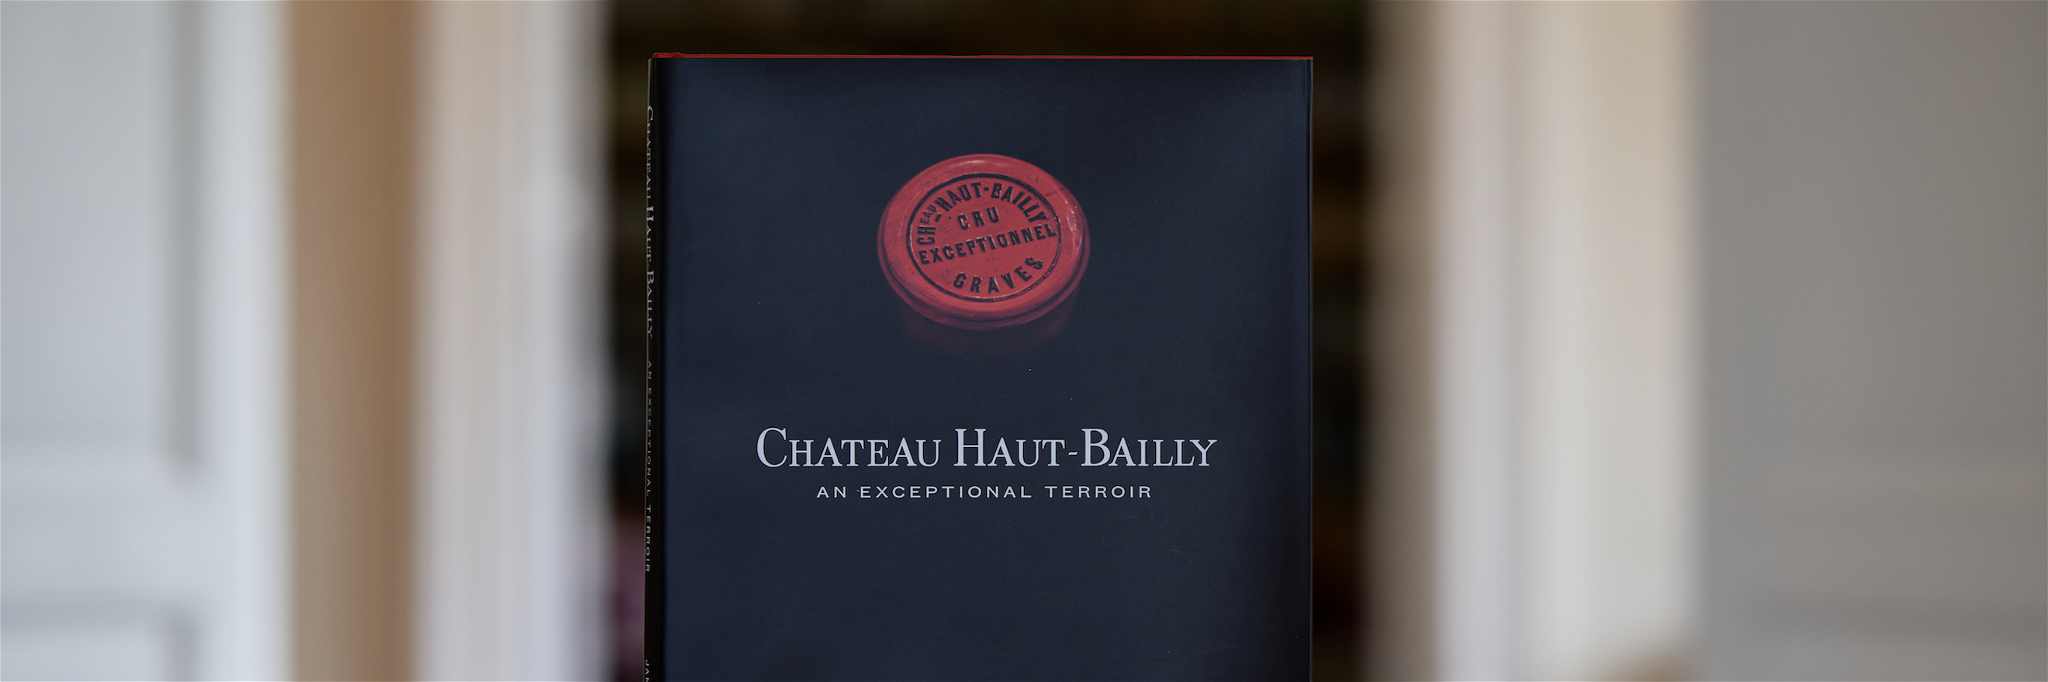 The new book&nbsp;Château Haut-Bailly: an exceptional terroir.